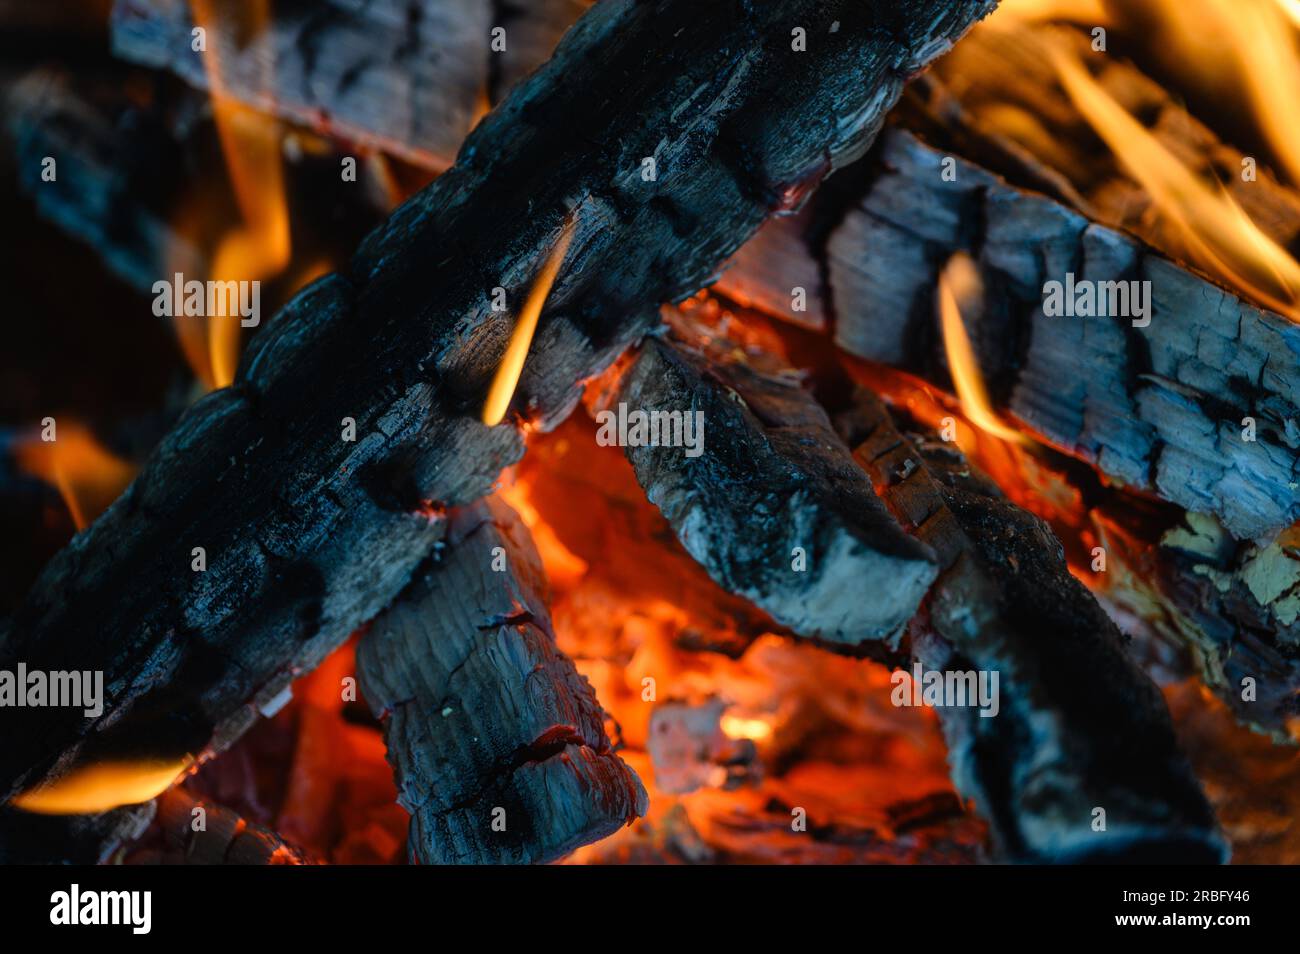 Des bûches de bois brûlent dans la cheminée. gros plan. Langues de flamme sur un fond sombre. Banque D'Images